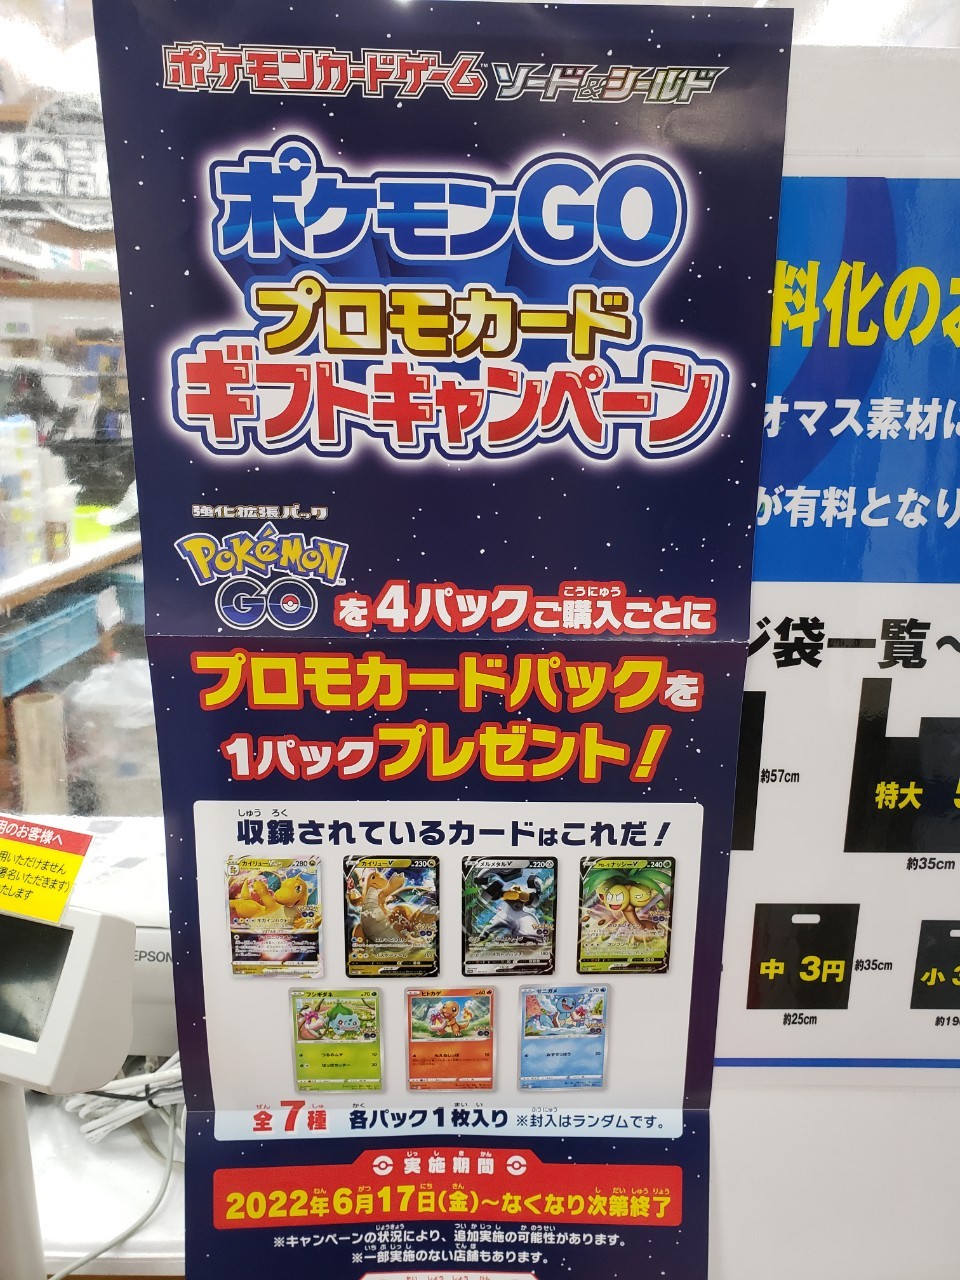 【新品未開封】ポケモンgo カードファイルセット 6セット